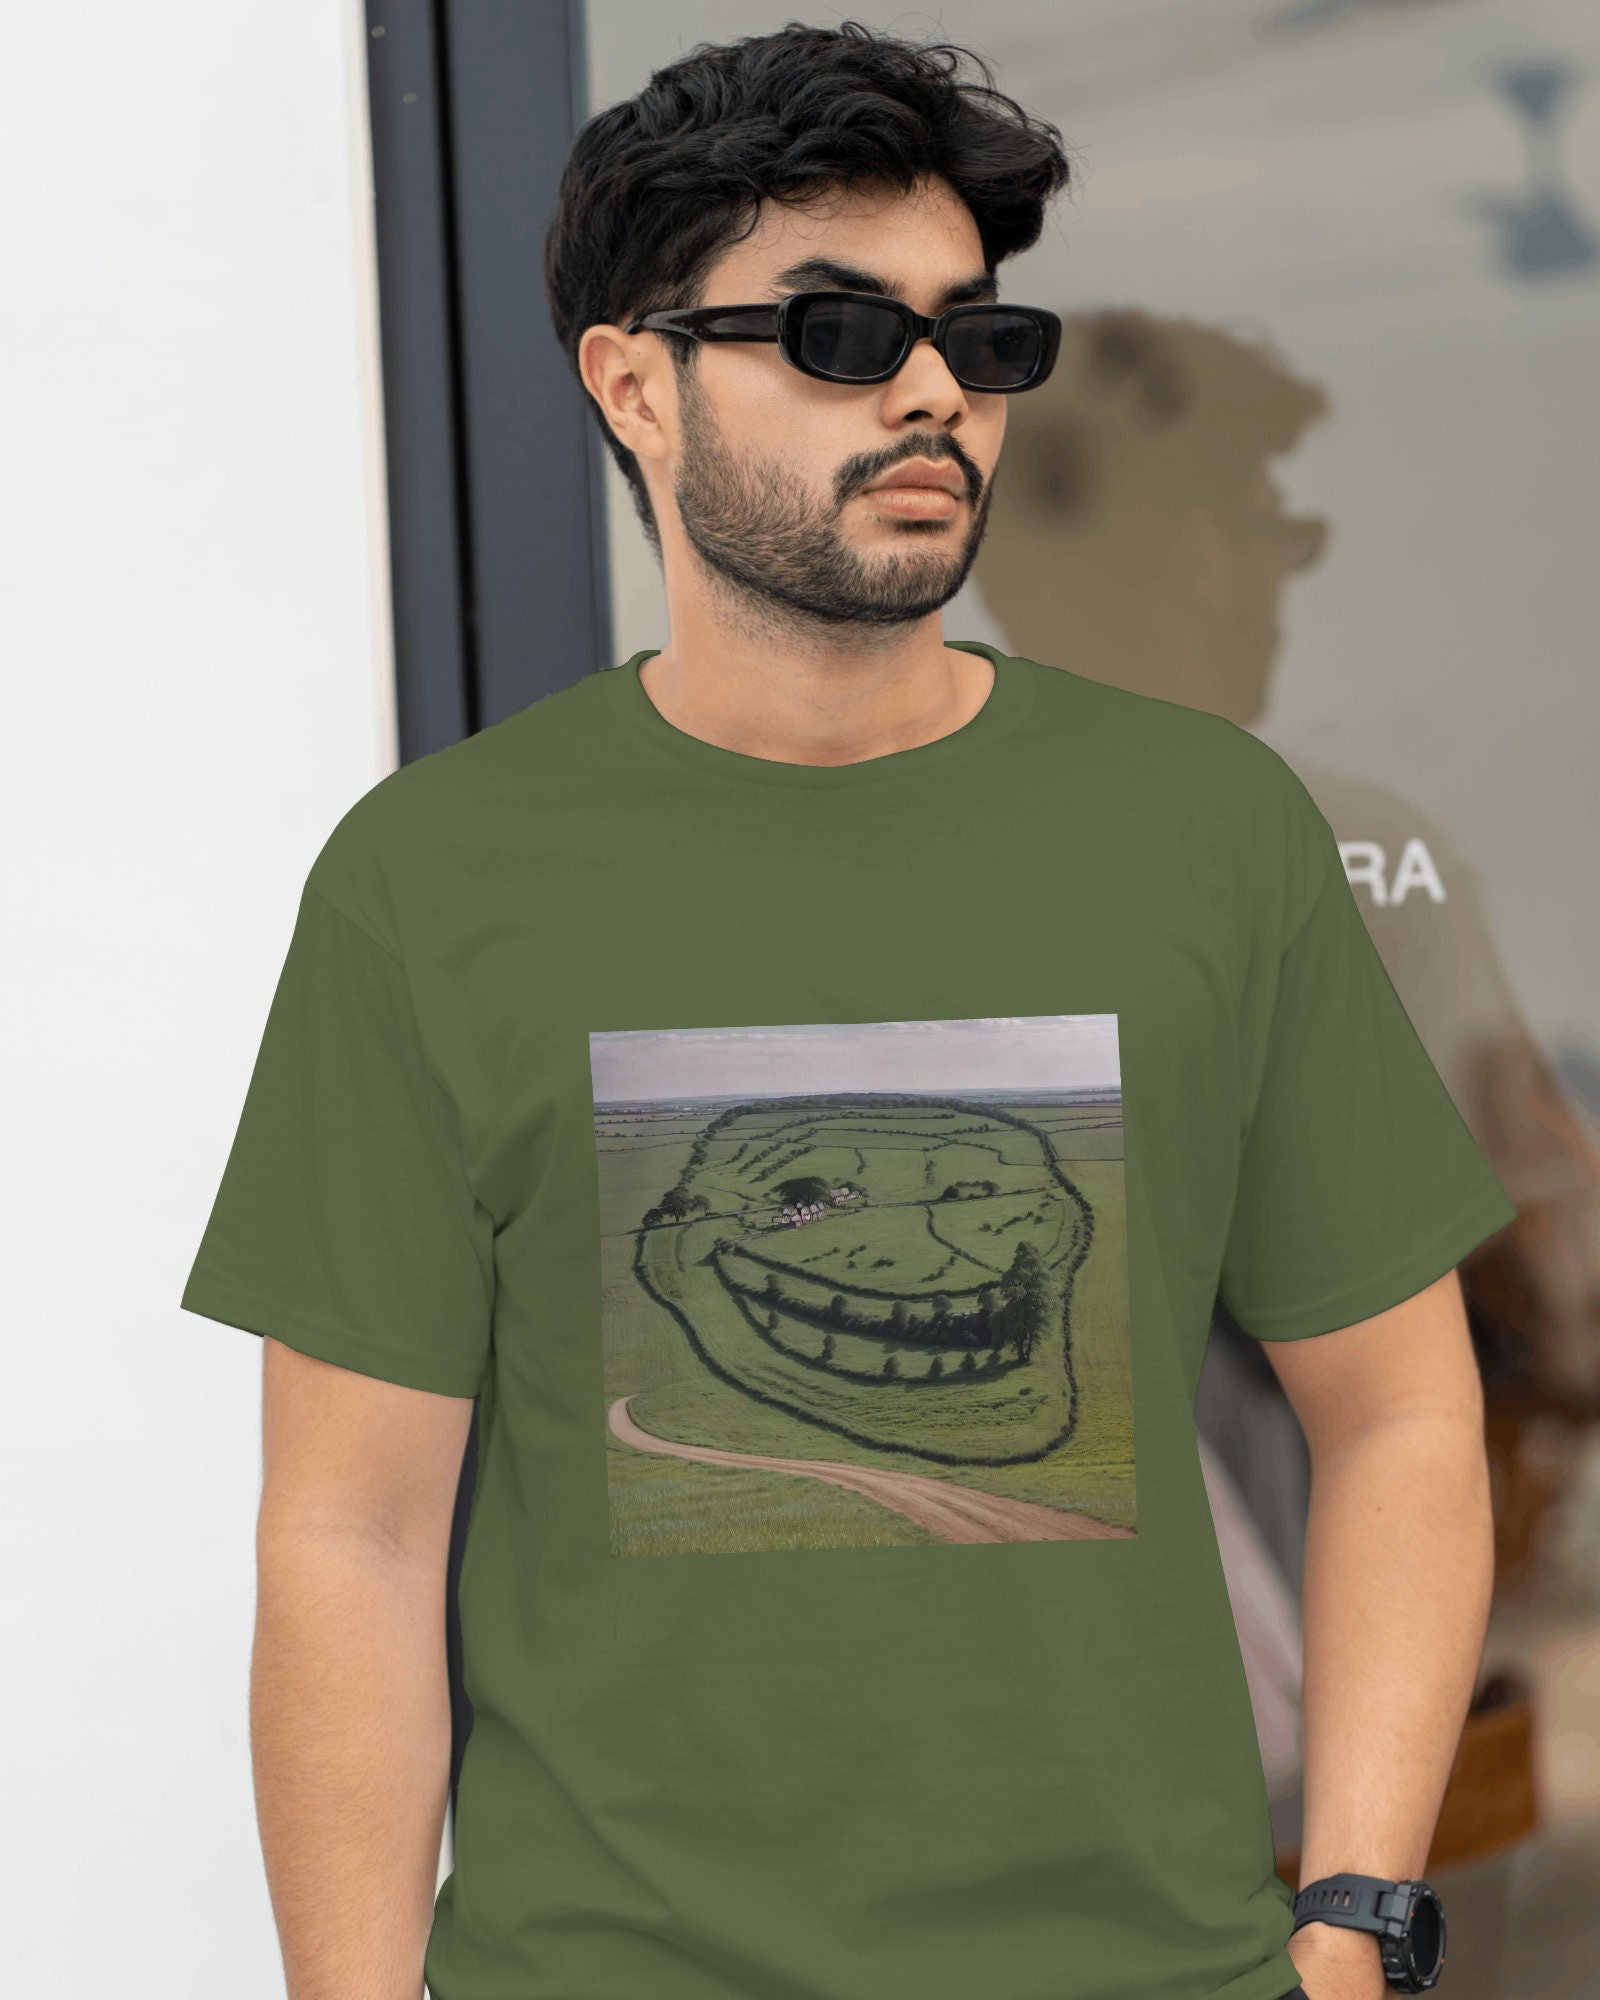 Sad Troll Face Meme Source the Voices Told Meme T-shirt -  Sweden